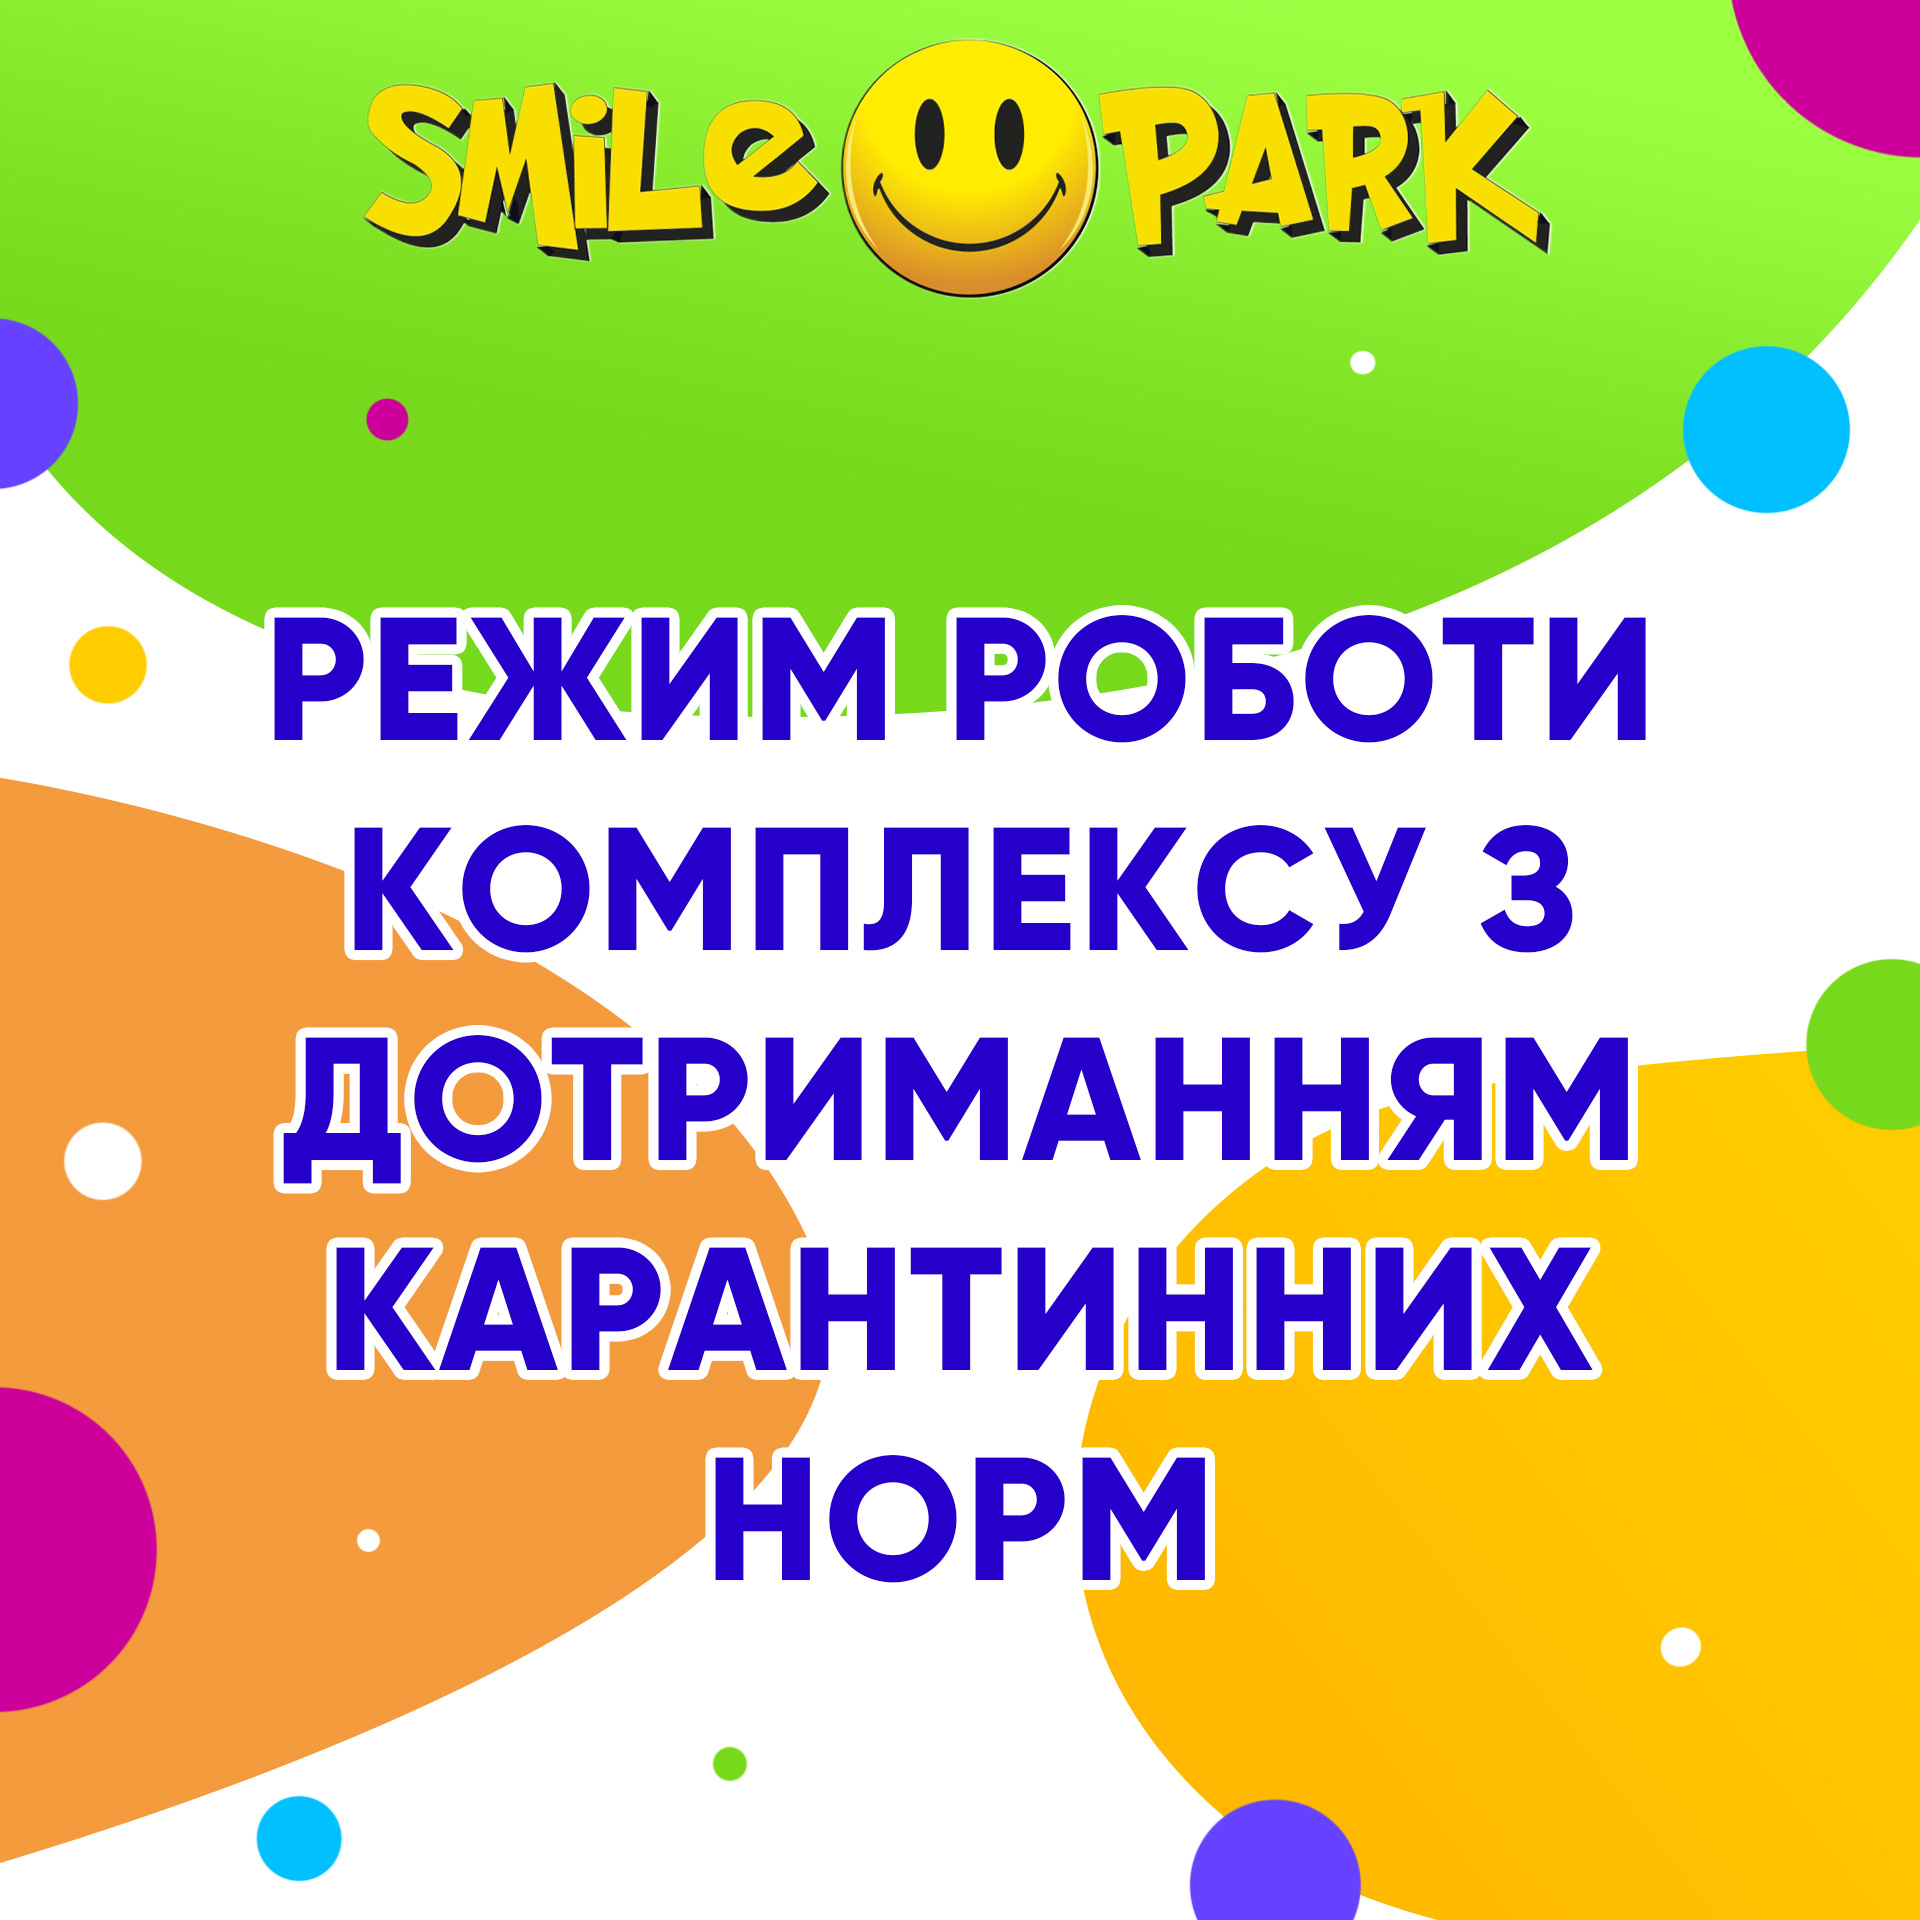 Режим работы комплекса Smile Park!